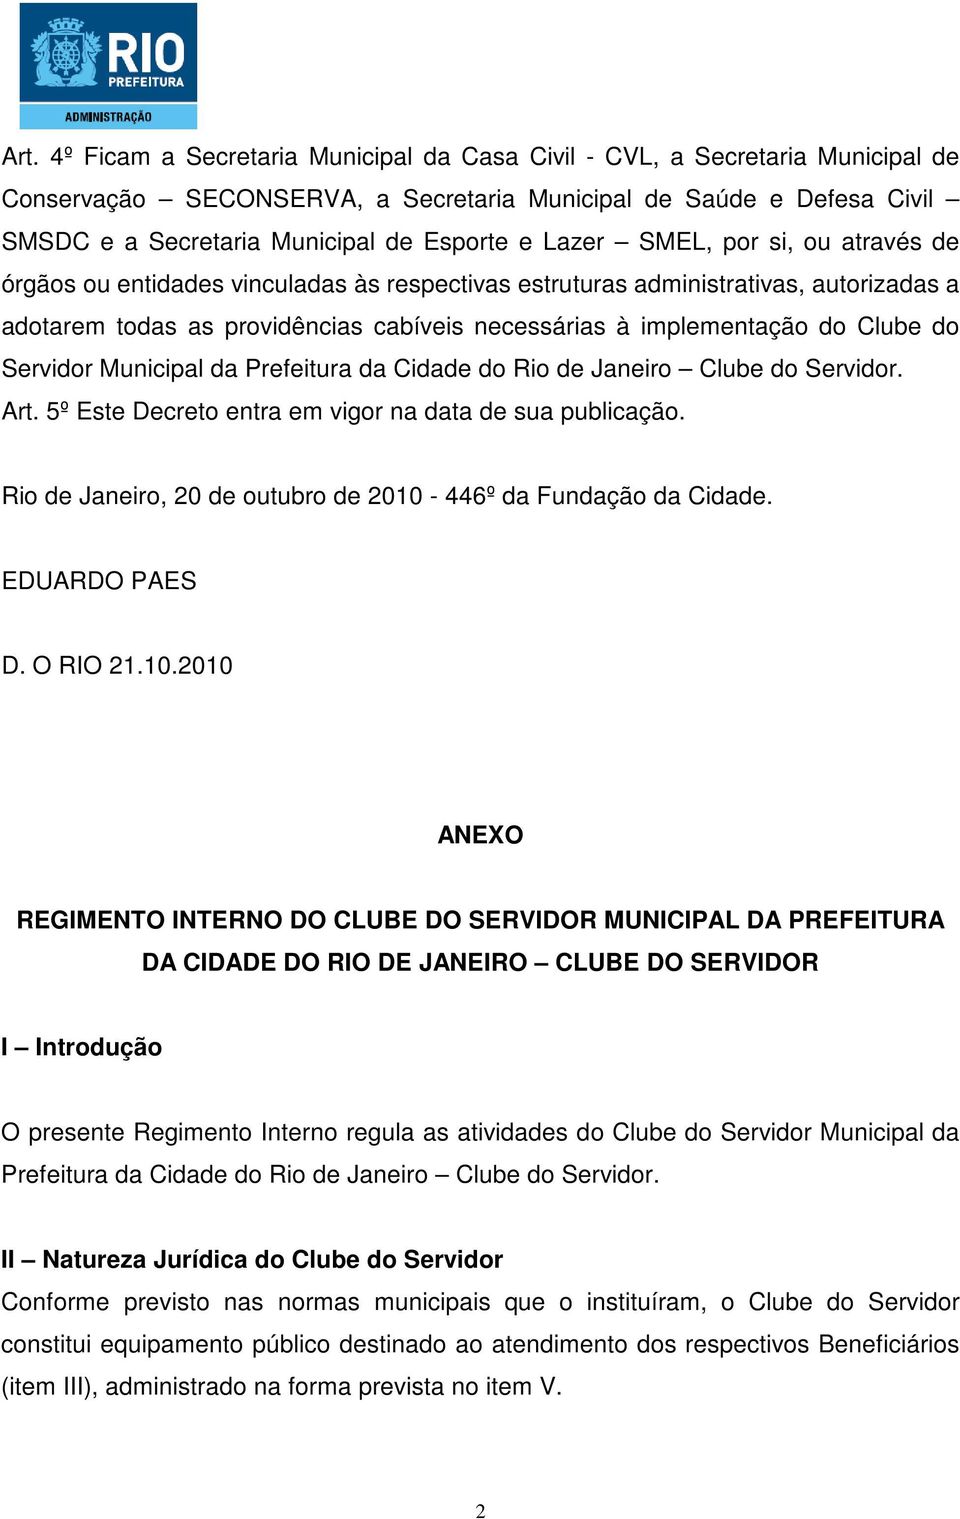 do Servidor Municipal da Prefeitura da Cidade do Rio de Janeiro Clube do Servidor. Art. 5º Este Decreto entra em vigor na data de sua publicação.